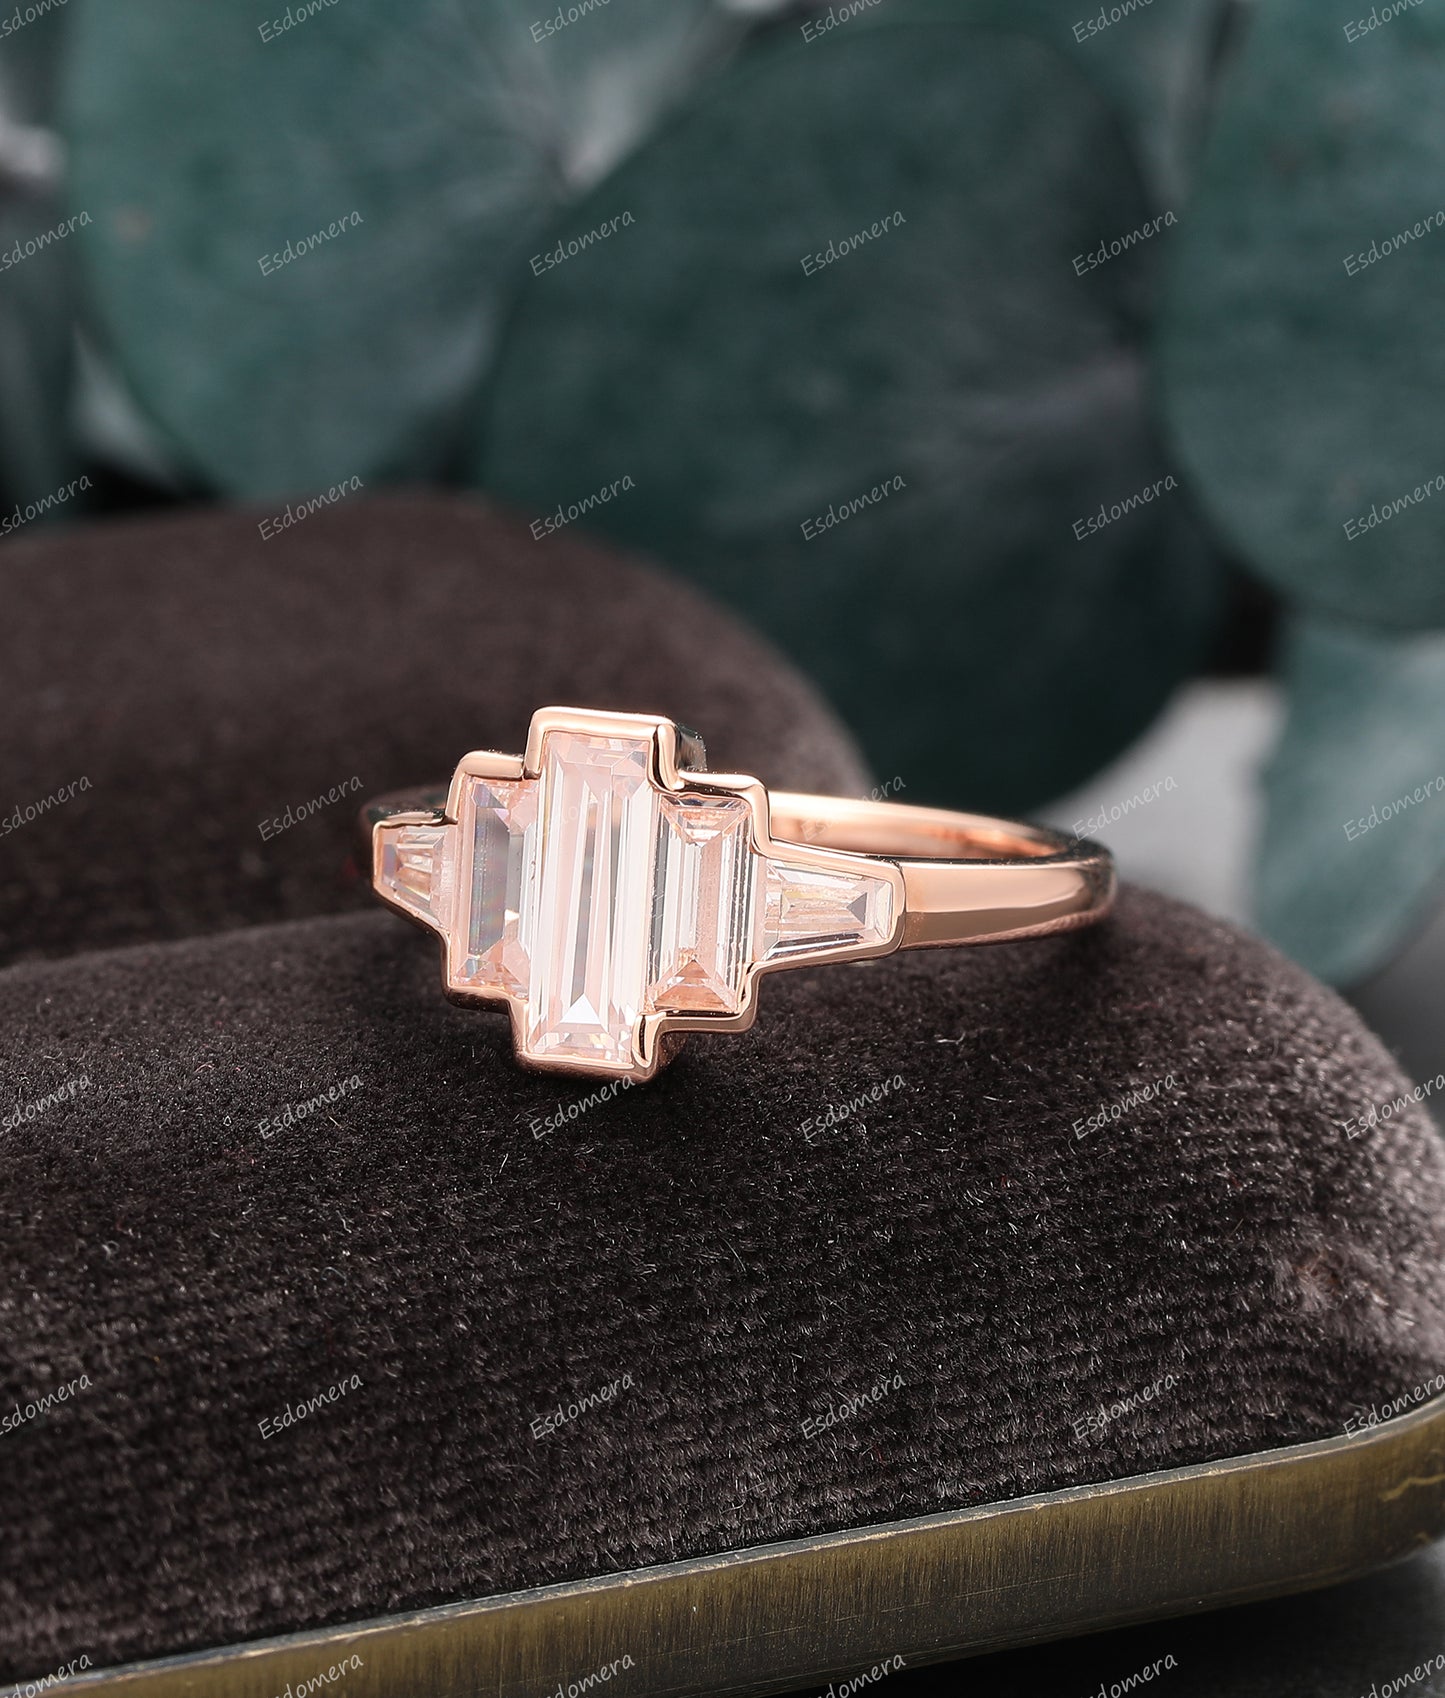 Bezel Set 3x9mm Baguette Cut Engagement Moissiante Ring, 14k Rose Gold Art Deco Moissanite Promise Ring For Women